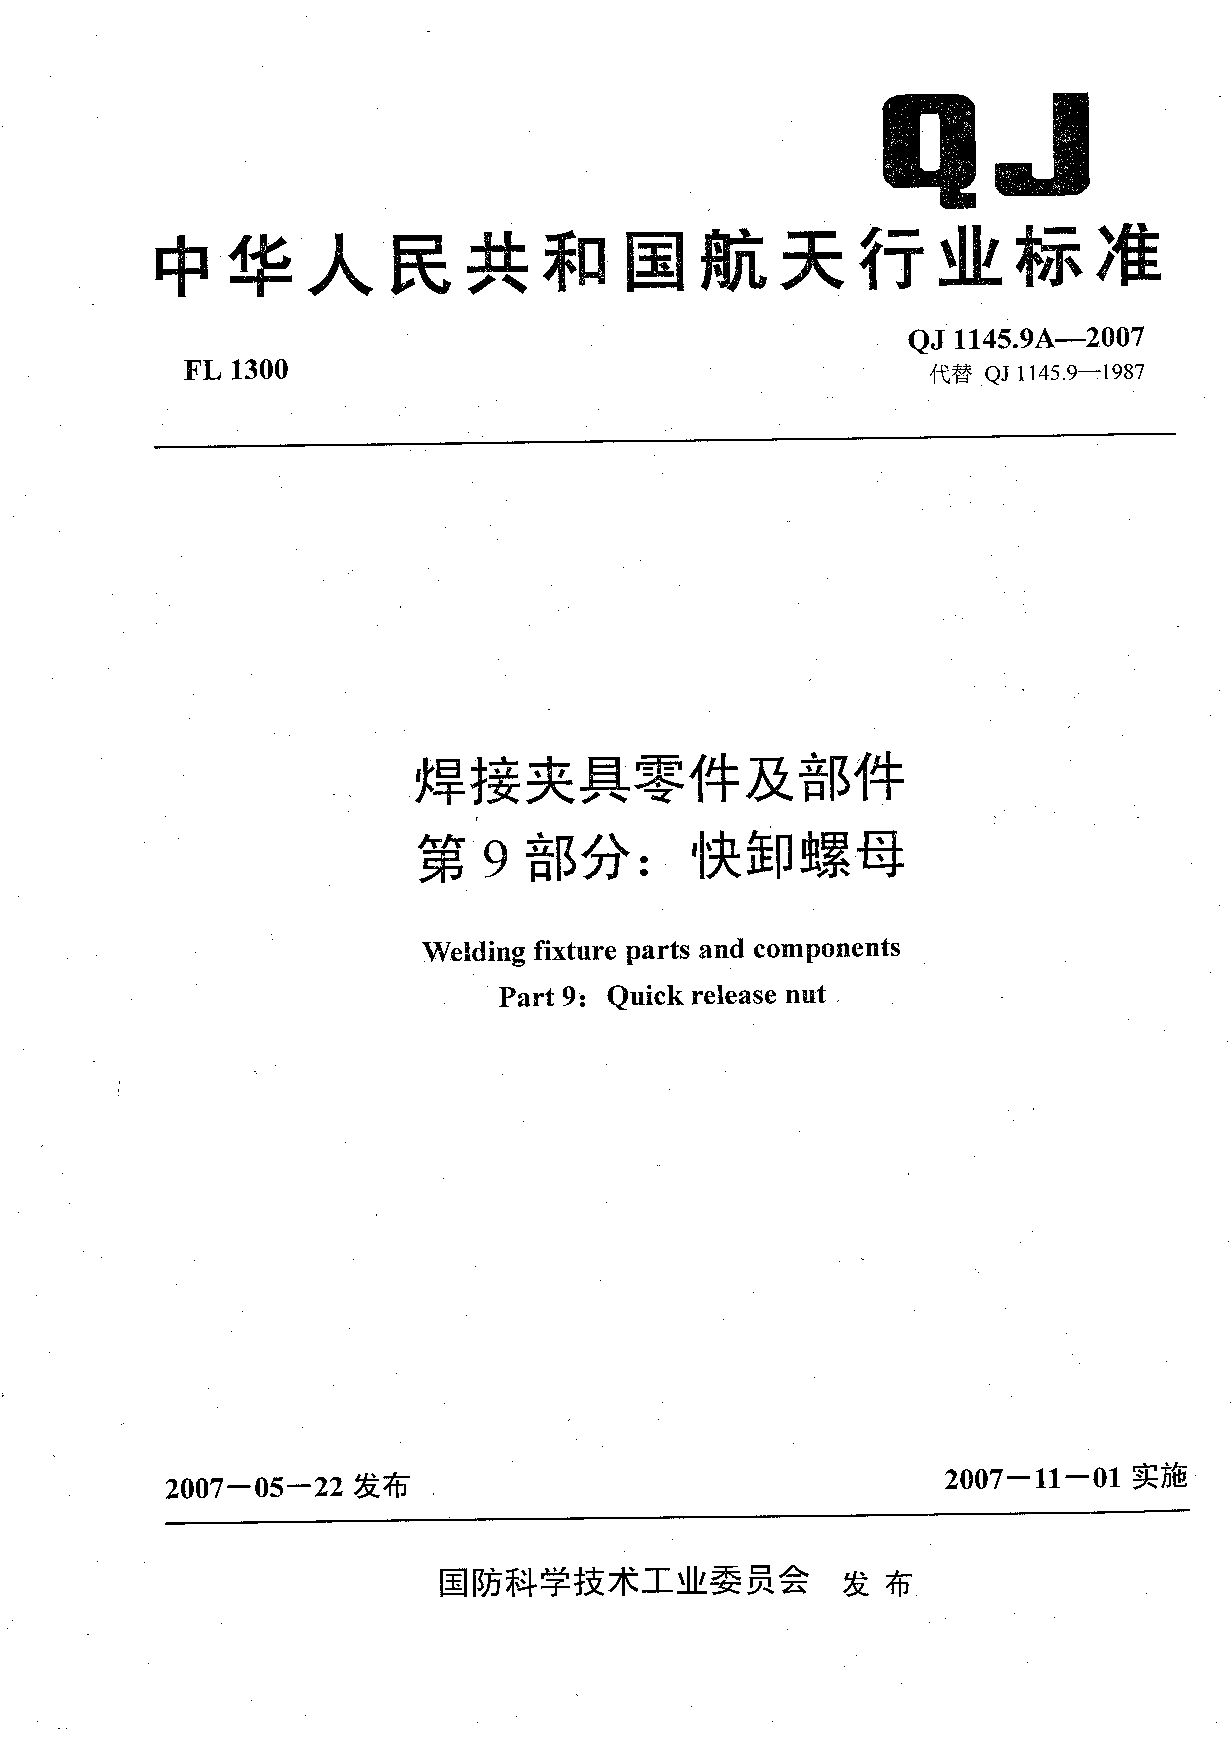 QJ 1145.9A-2007封面图